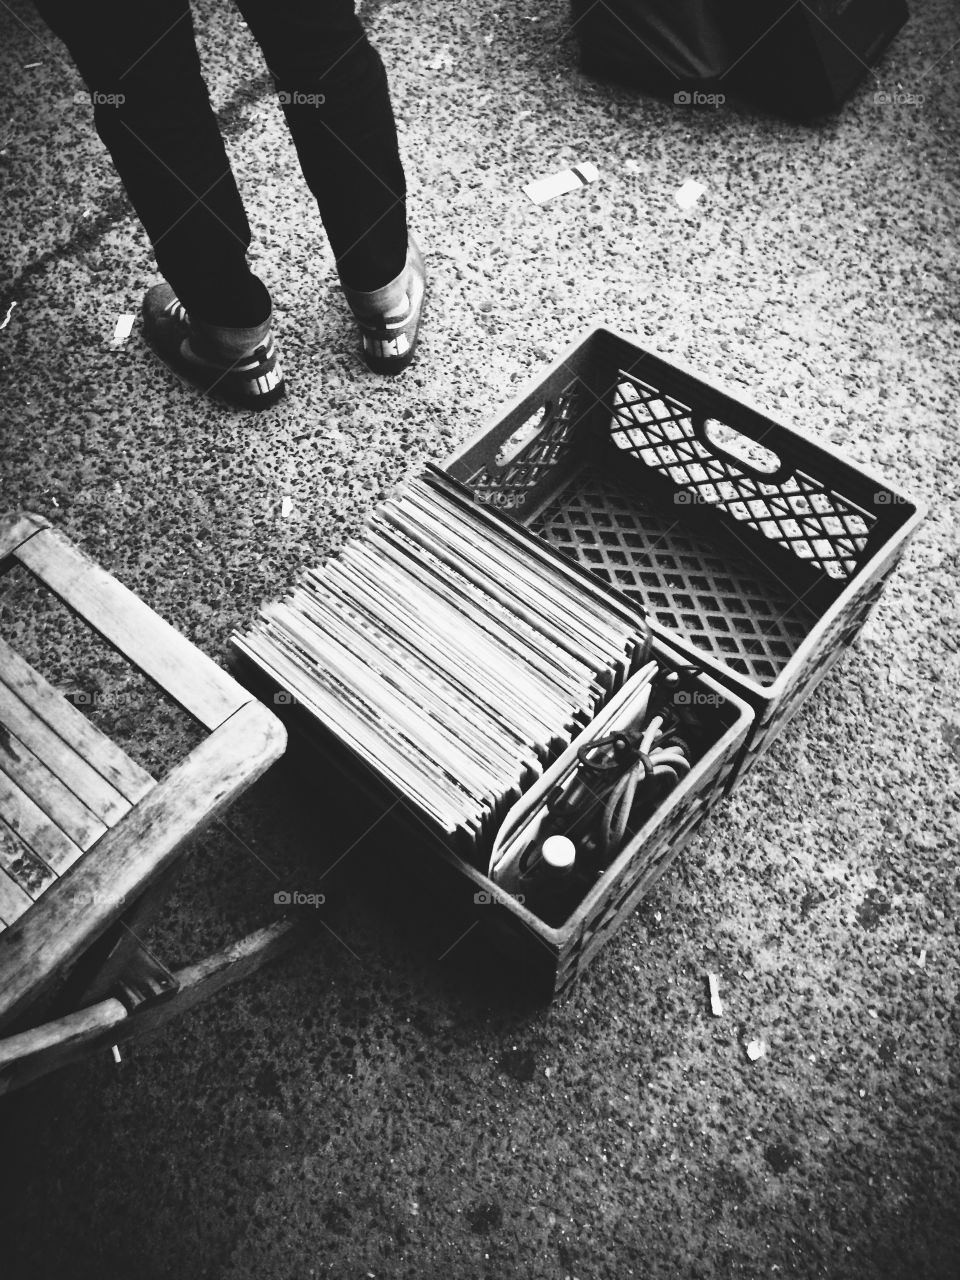 Vinyl in crates